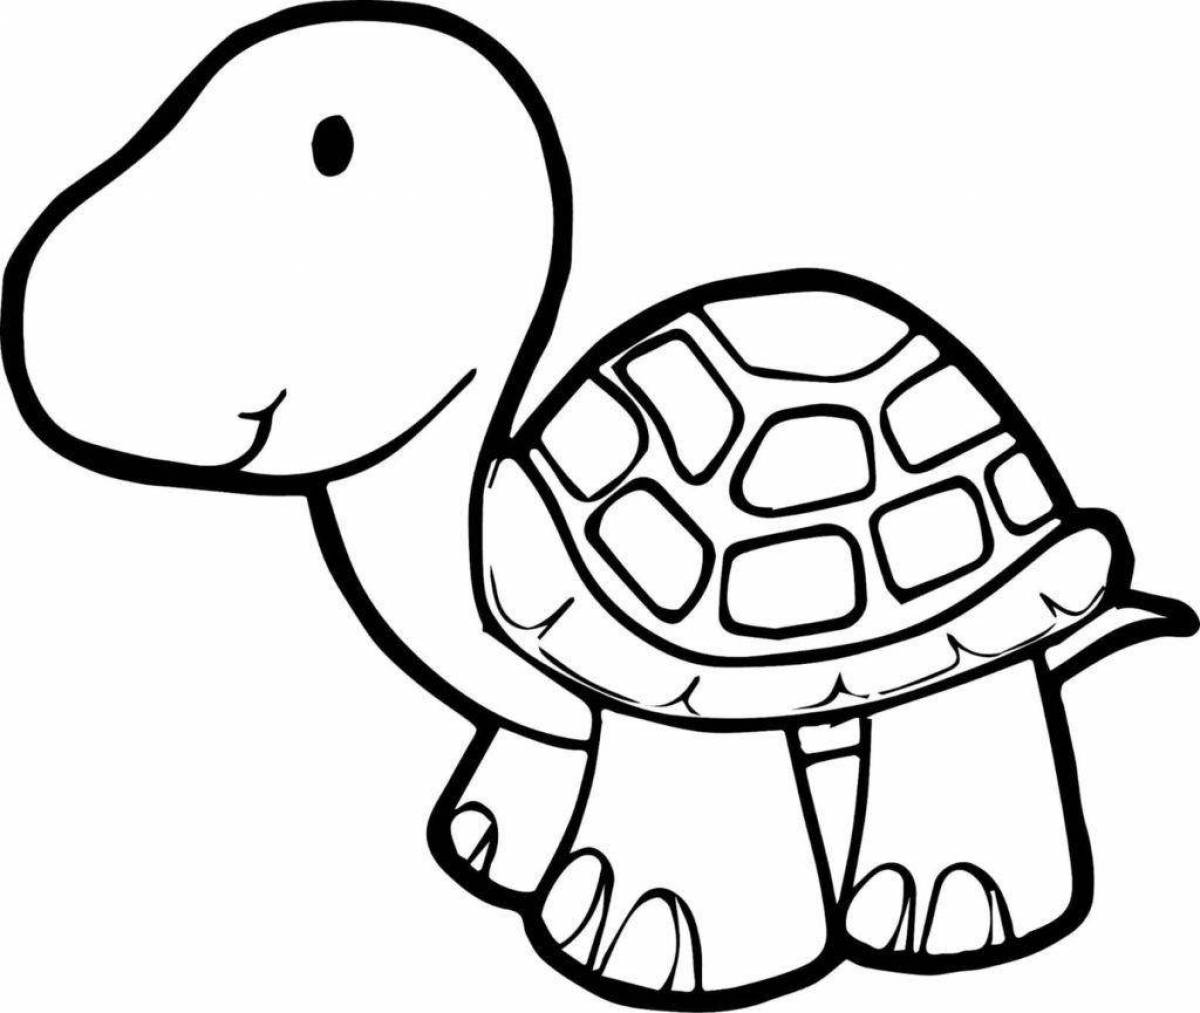 Раскраски черепах — распечатать или скачать бесплатно